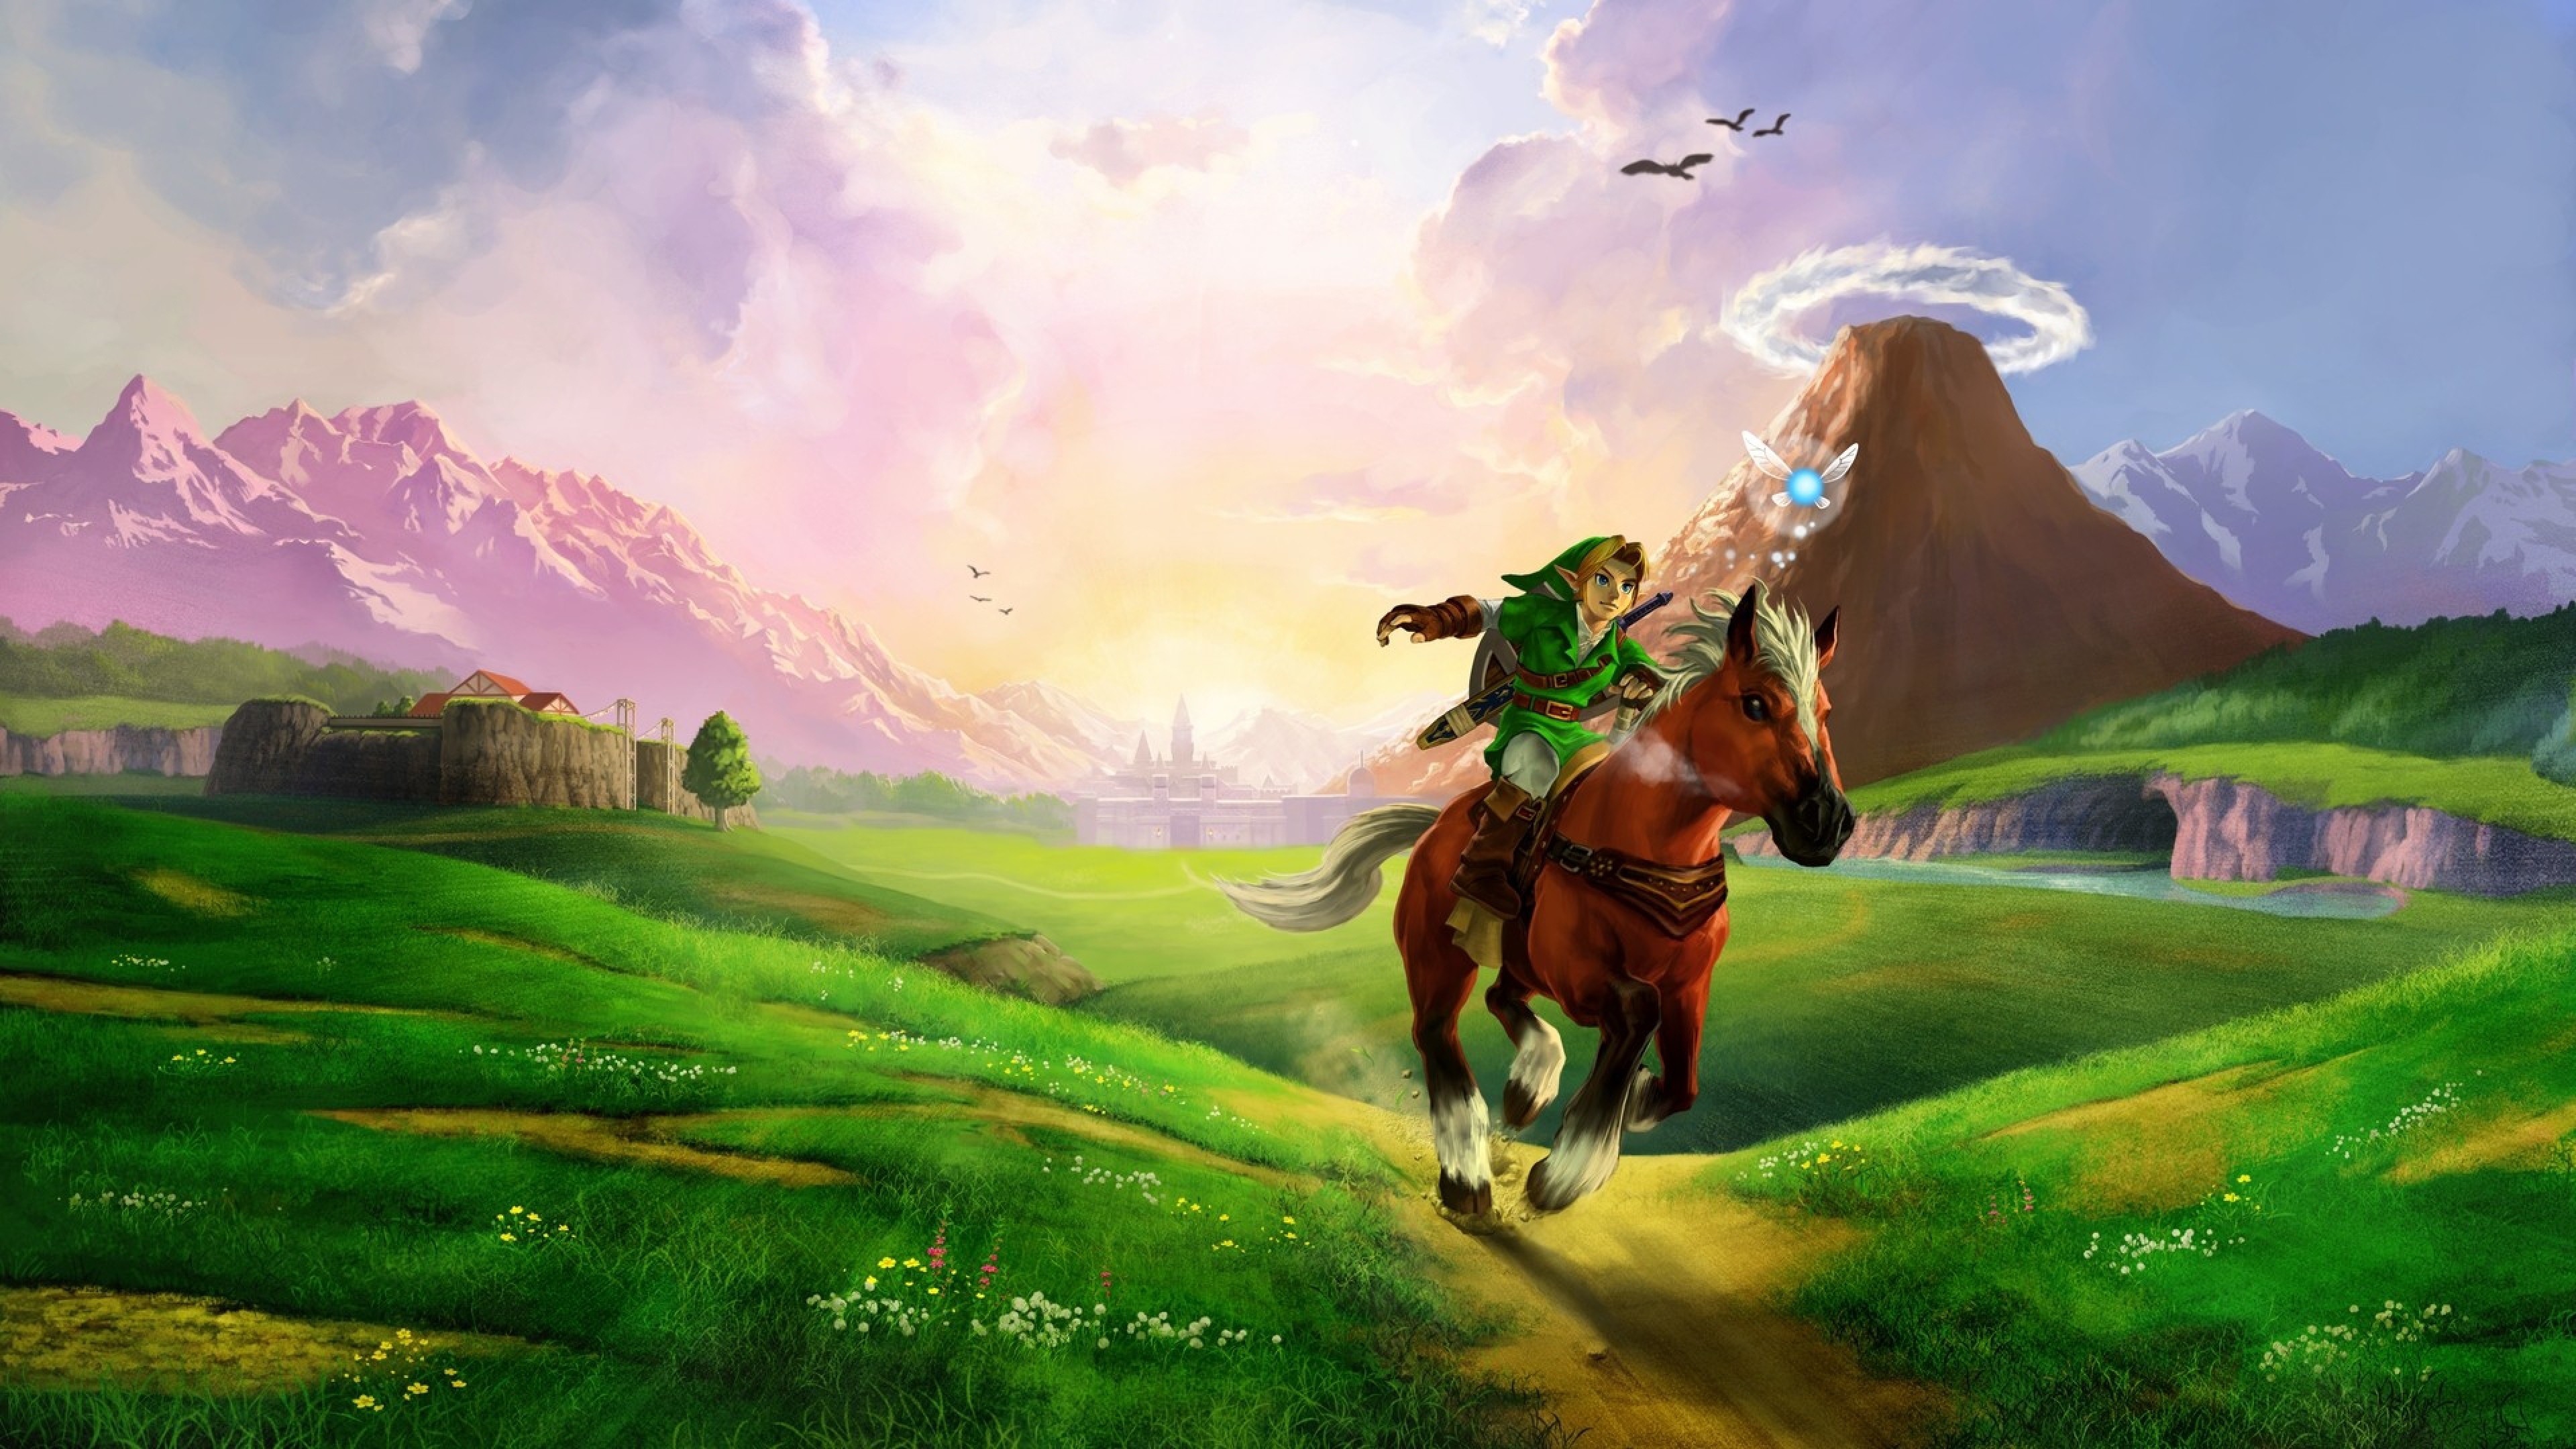 49+] Zelda 4K Wallpaper - WallpaperSafari